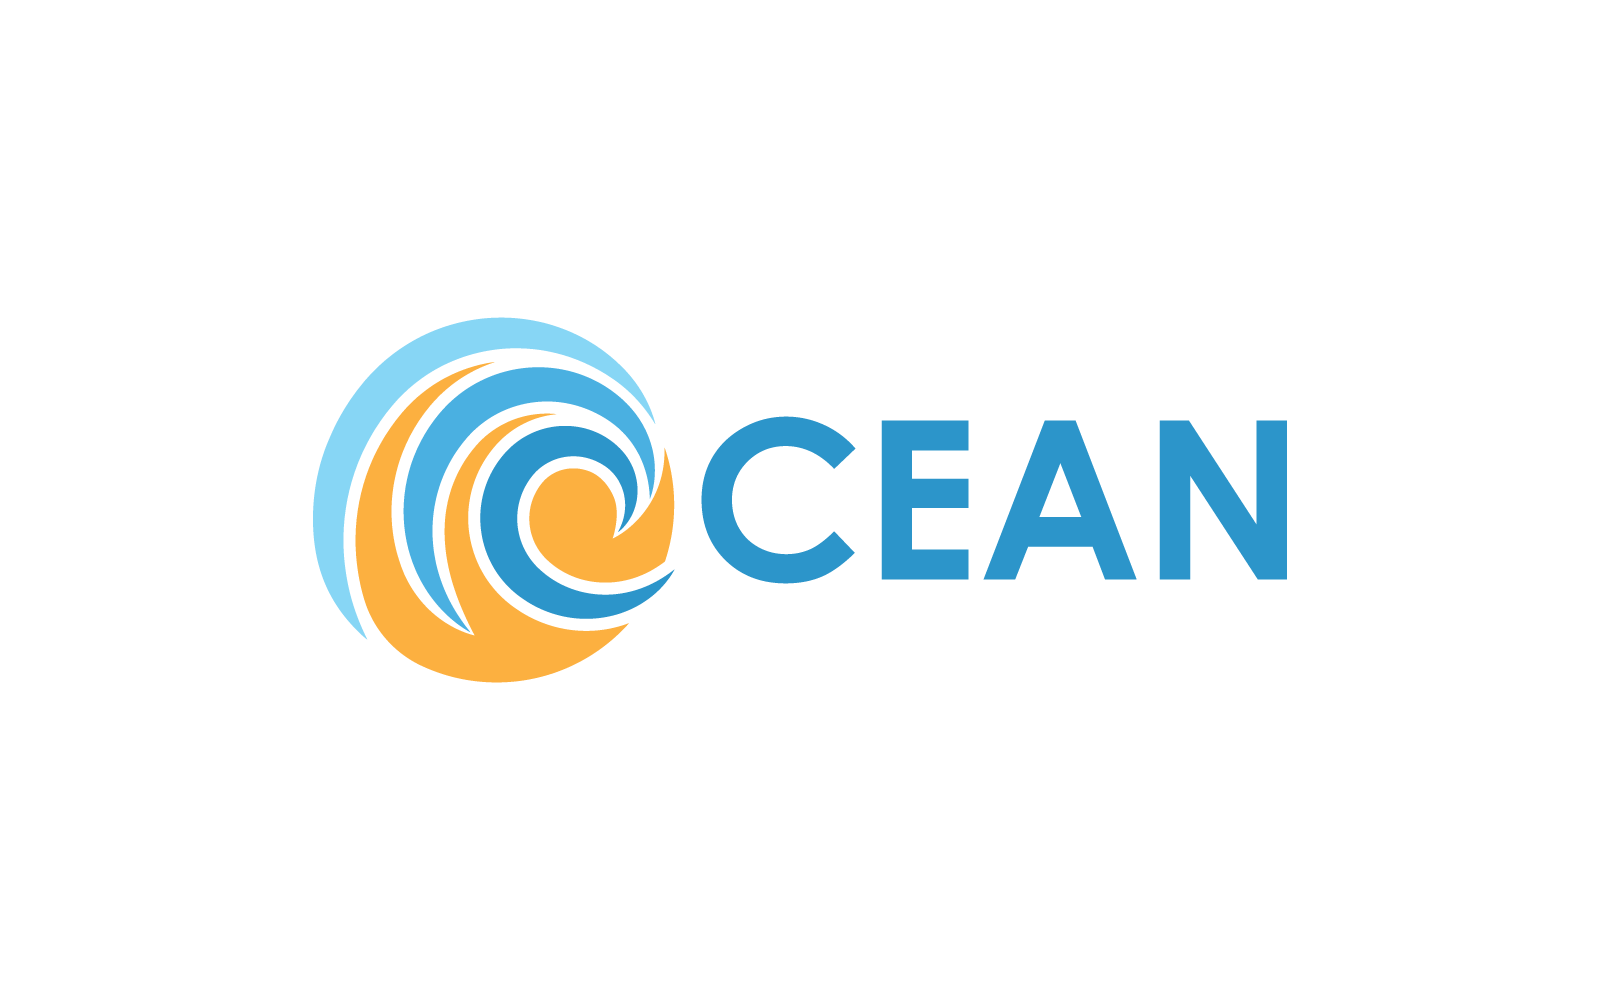 Streszczenie fala projekt logo oceanu dla szablonu biznesowego